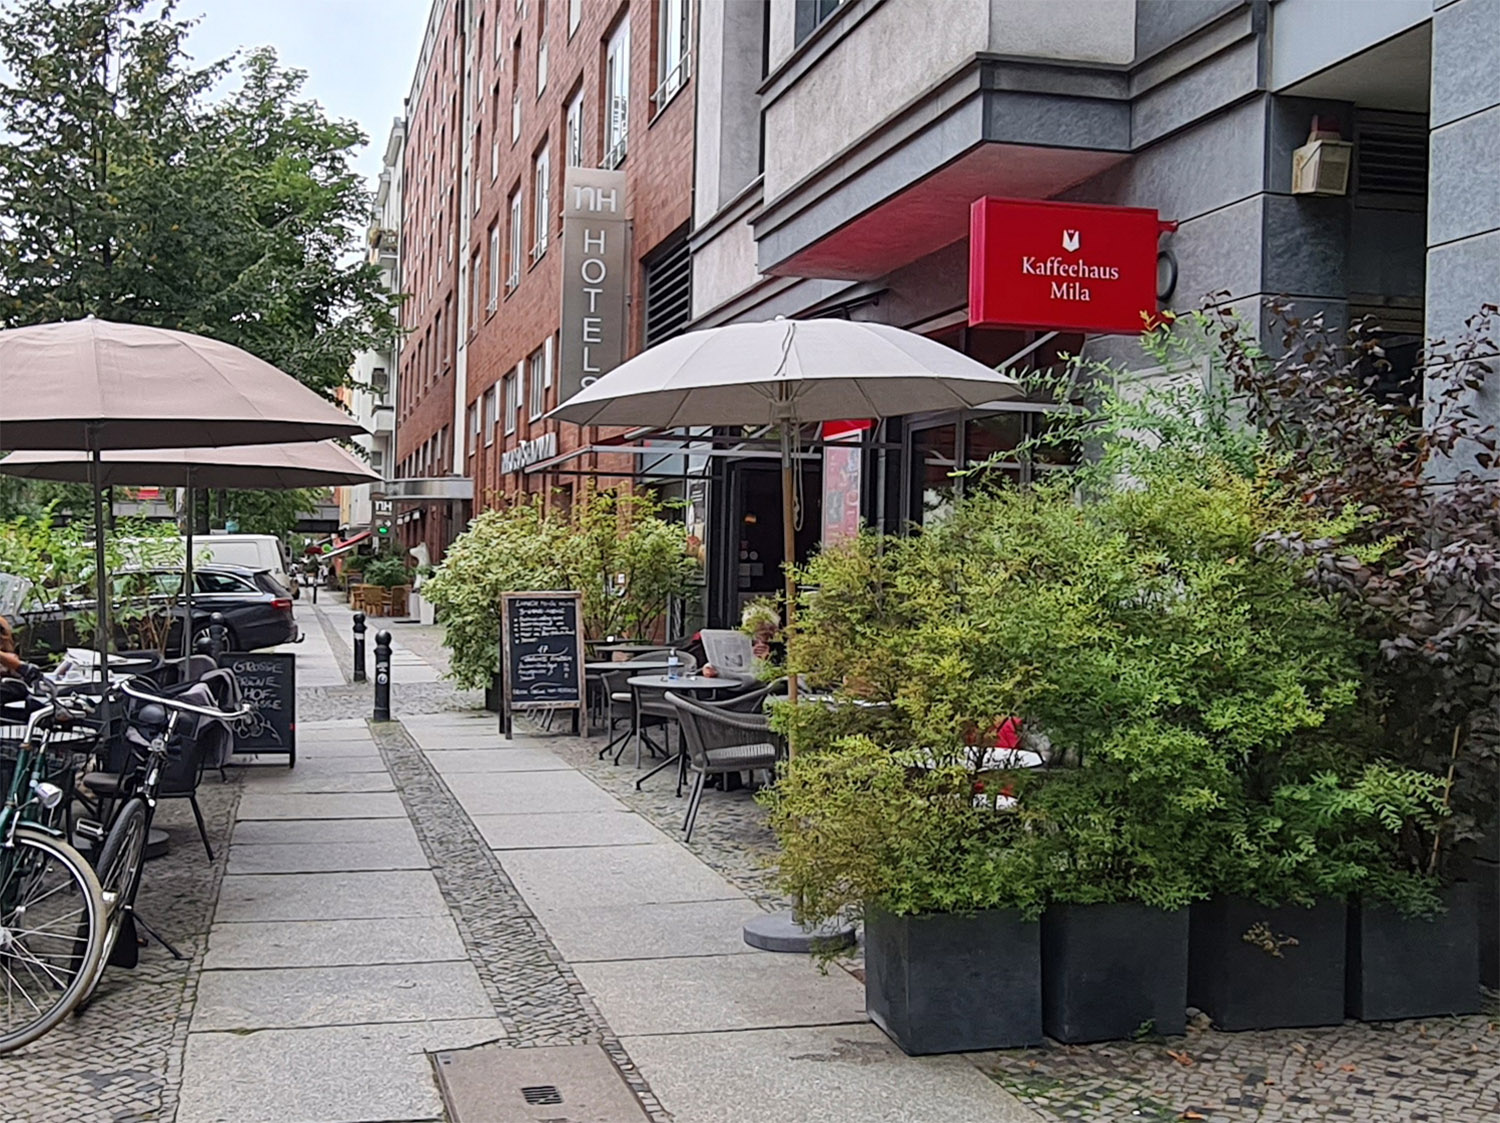 Frühstück in Charlottenburg ist im Kaffeehaus Mila auch einfach gemütlicher Kaffeekult.